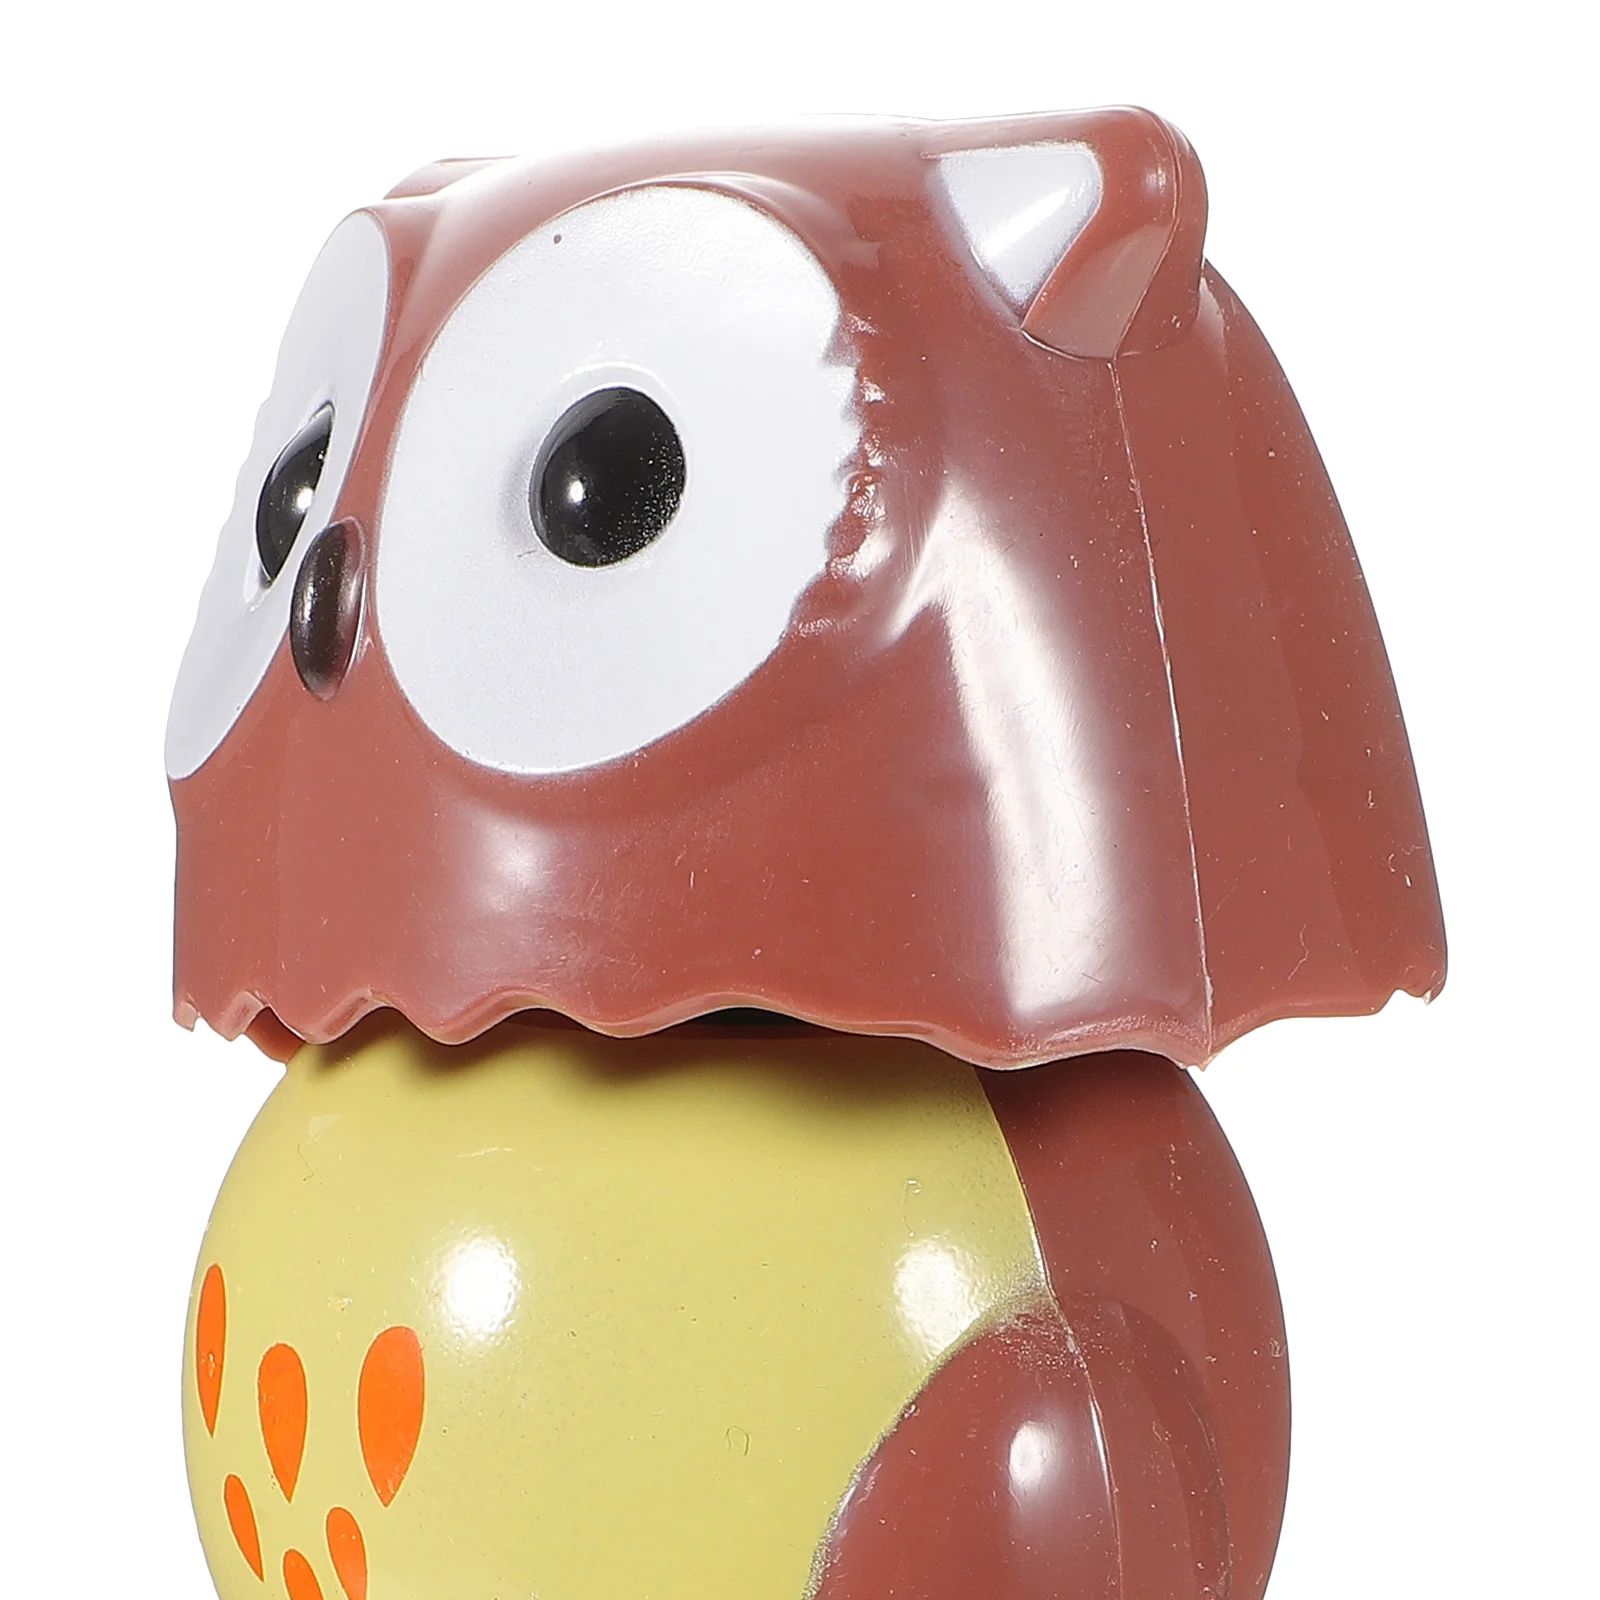 Car Playset Decoration Bobbing Heads Toy Owl Car Ornaments Car Interior Dashbo - £12.85 GBP